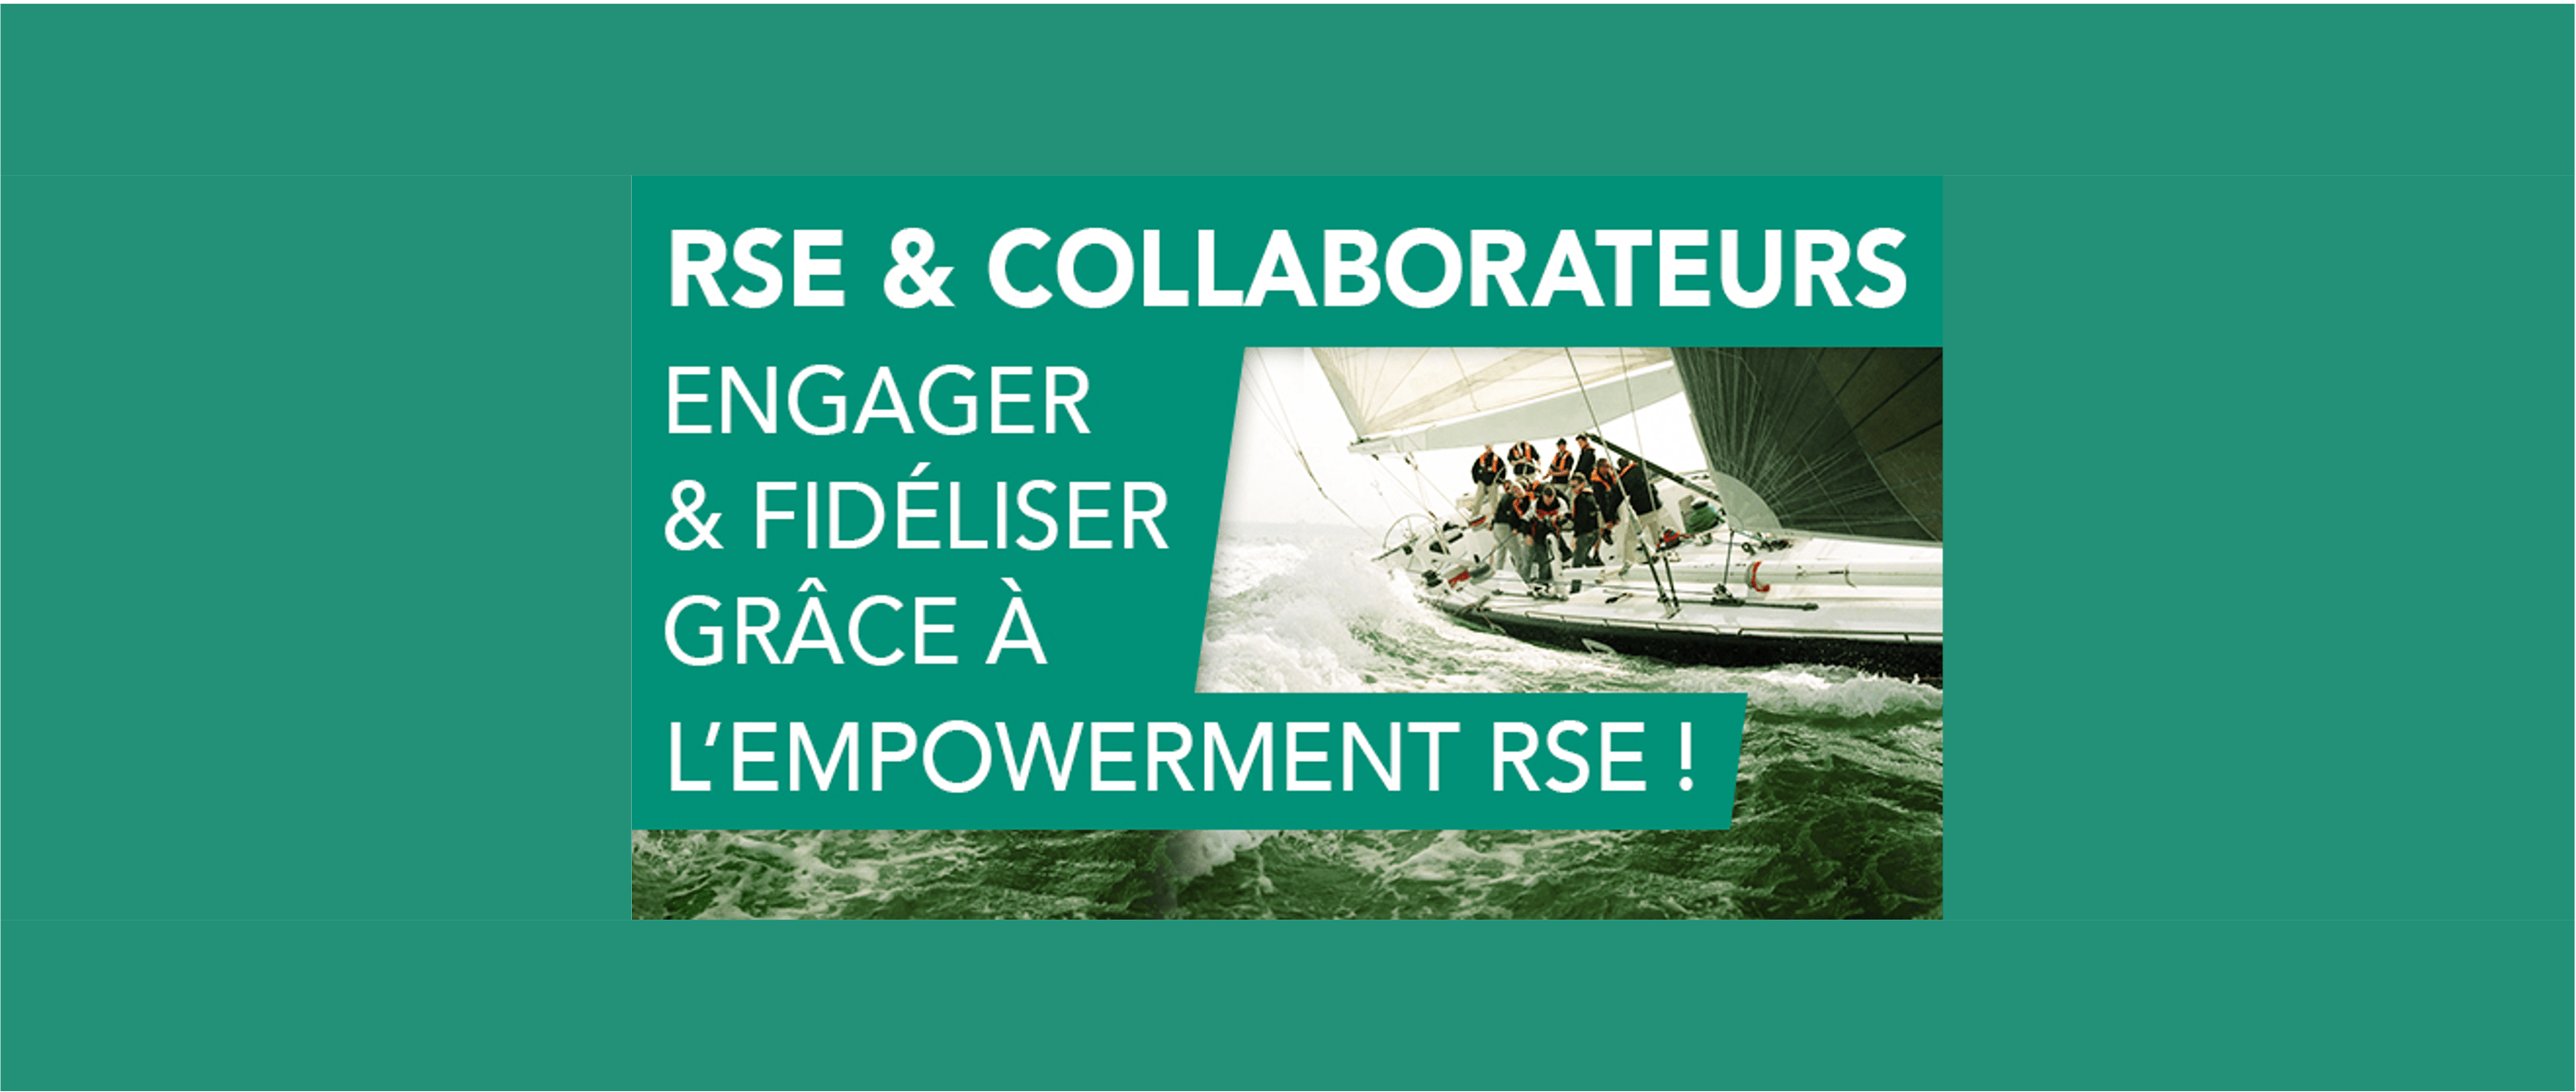 RSE et Collaborateurs : Engager & fidéliser grâce à l’empowerment RSE